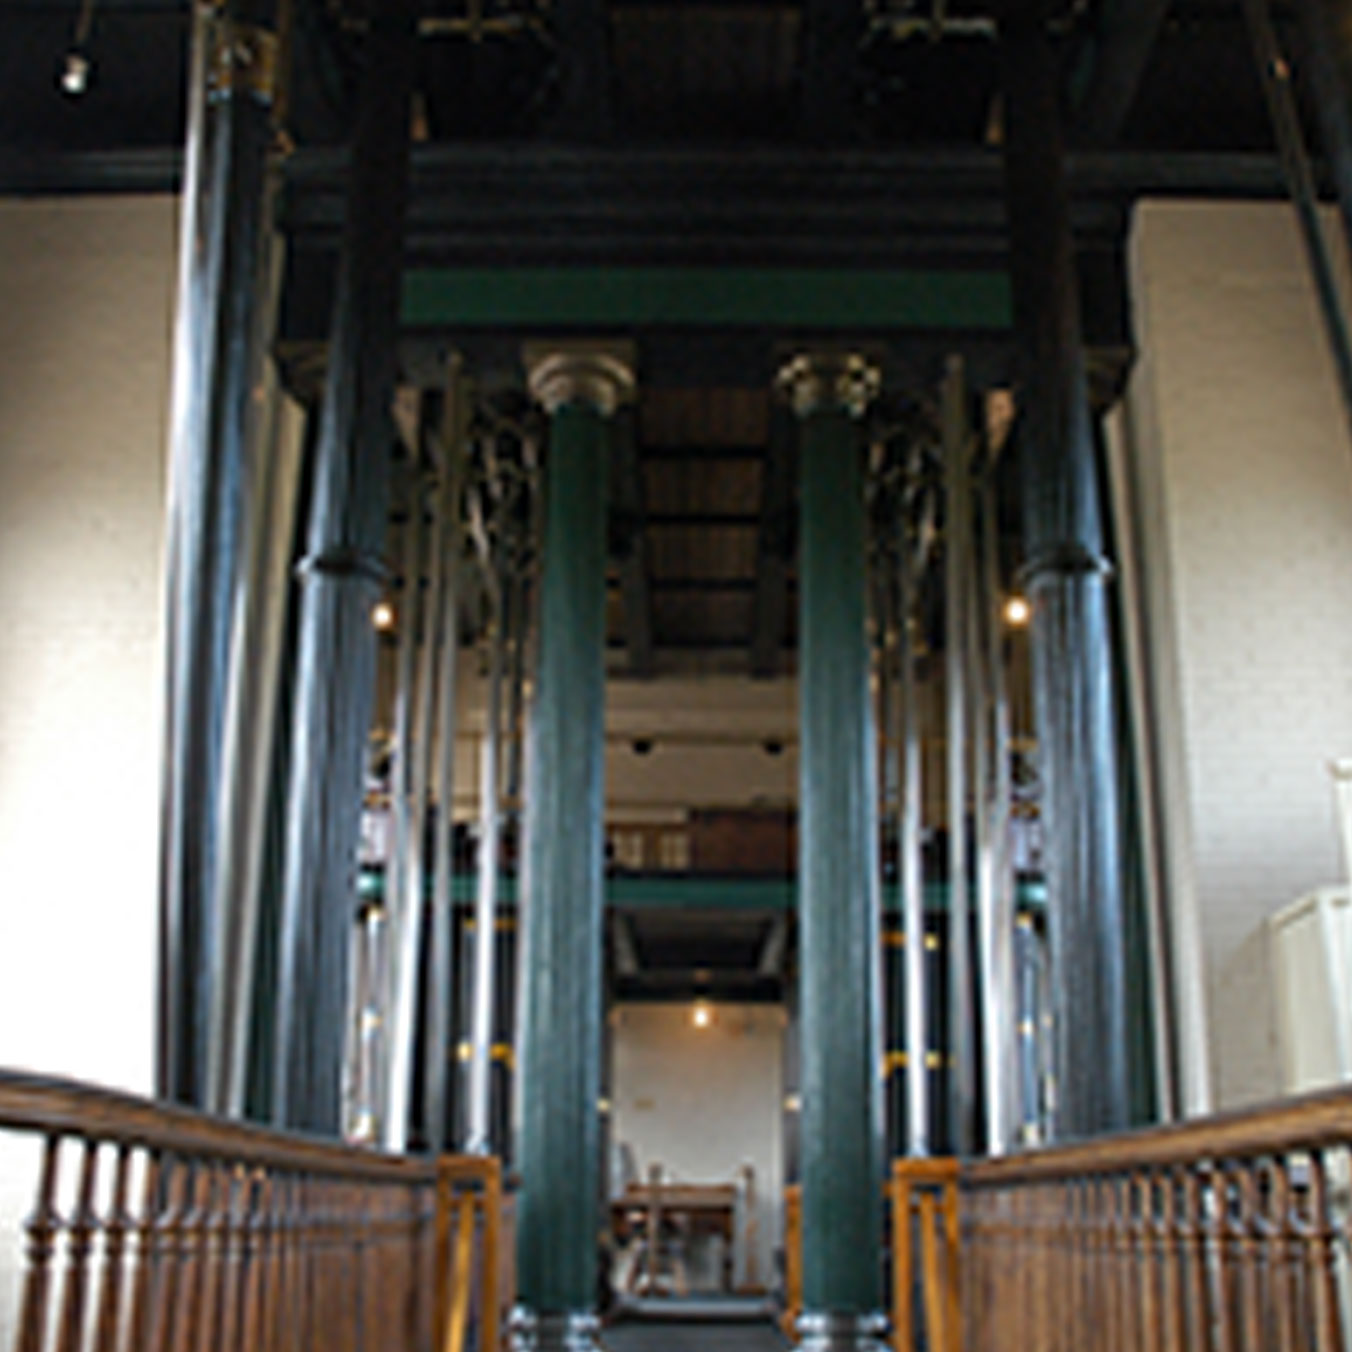 Interior of steam museum